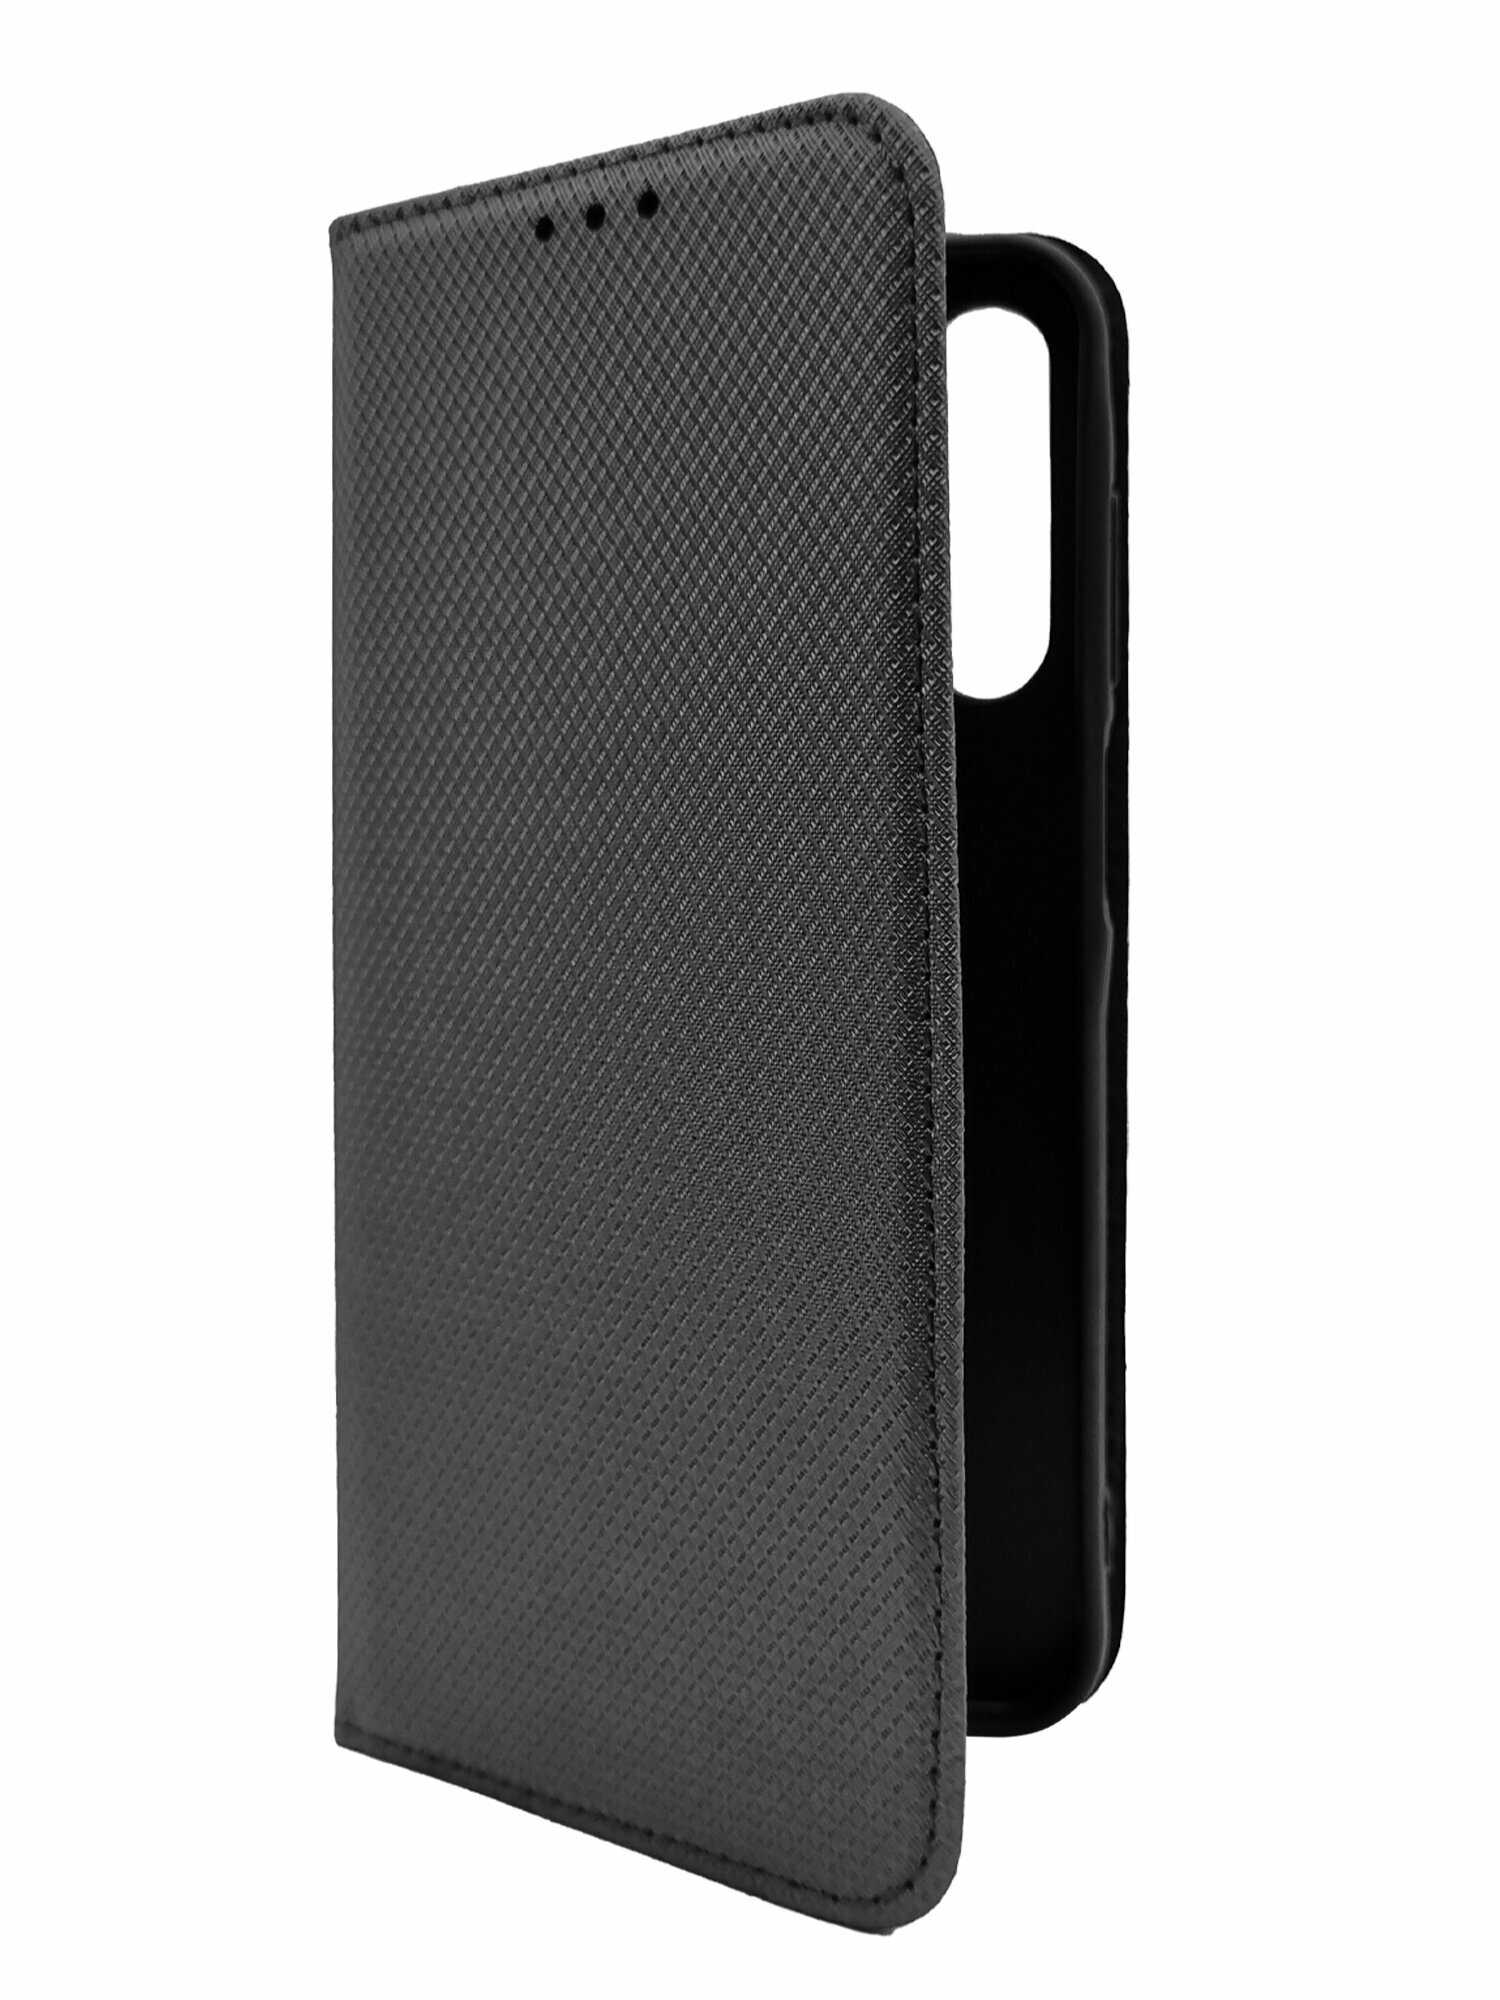 Чехол на Samsung Galaxy A15 5G (Самсунг Галакси А15 5г) черный книжка плетёнка с функцией подставки отделением для карт и магнитами Fold Case, Miuko